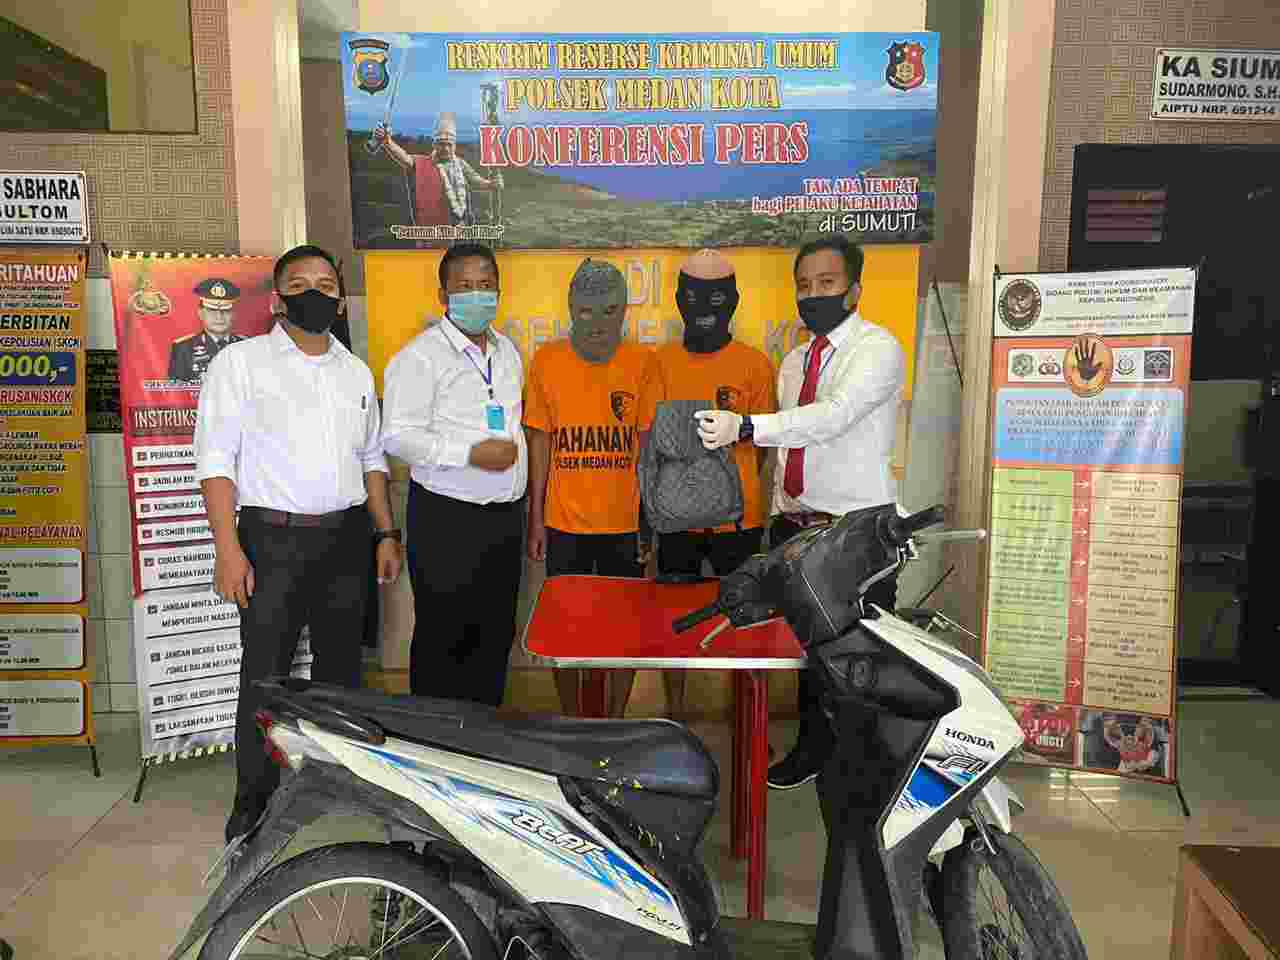 Pencuri Sepedamotor Ditangkap Polsek Medan Kota